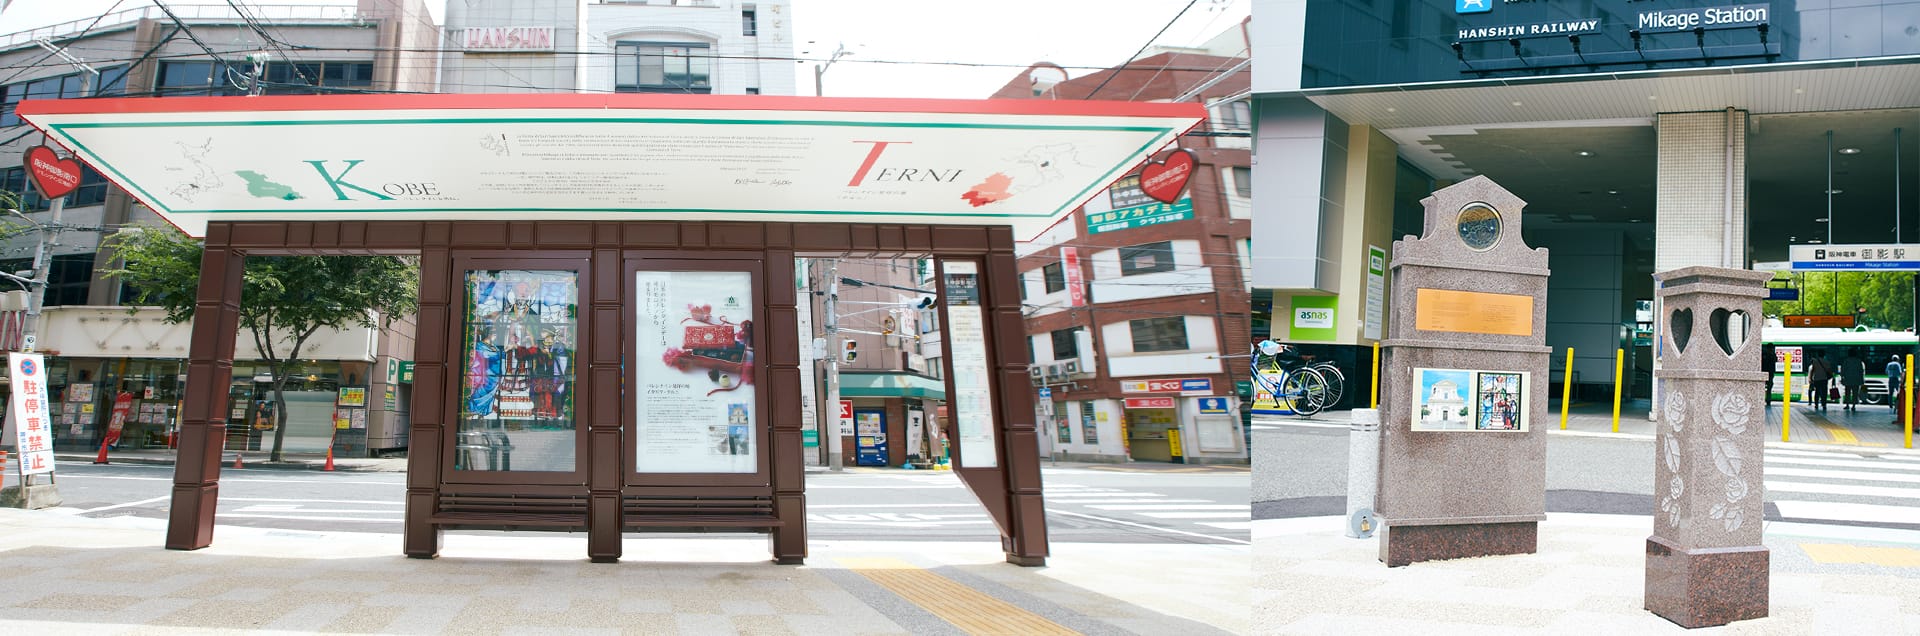 左)阪神御影南口(バレンタイン広場前)バス停 右)バレンタインモニュメント